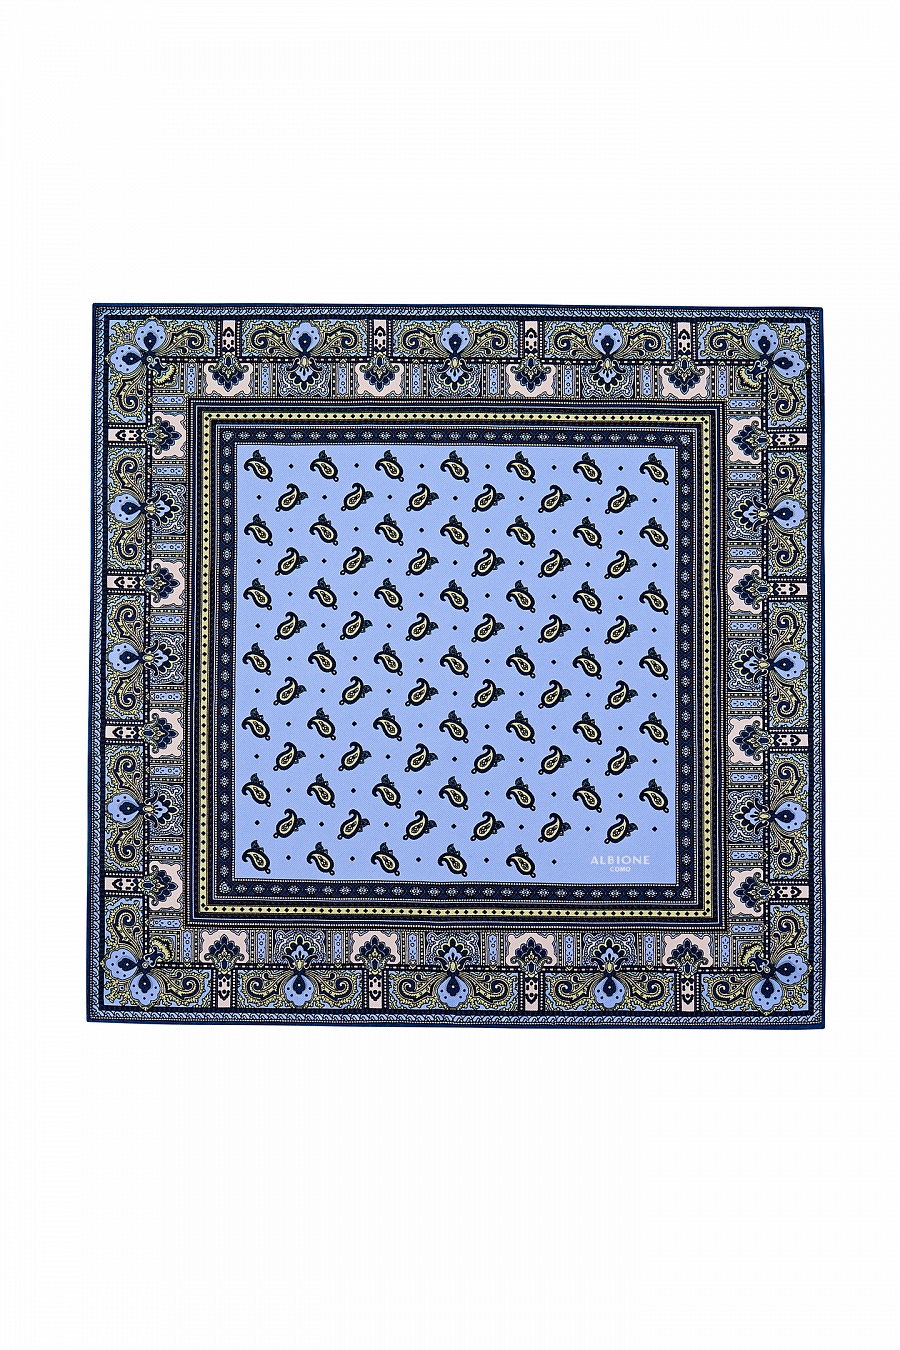 Арабские платки синие с узором. Платок Albione.